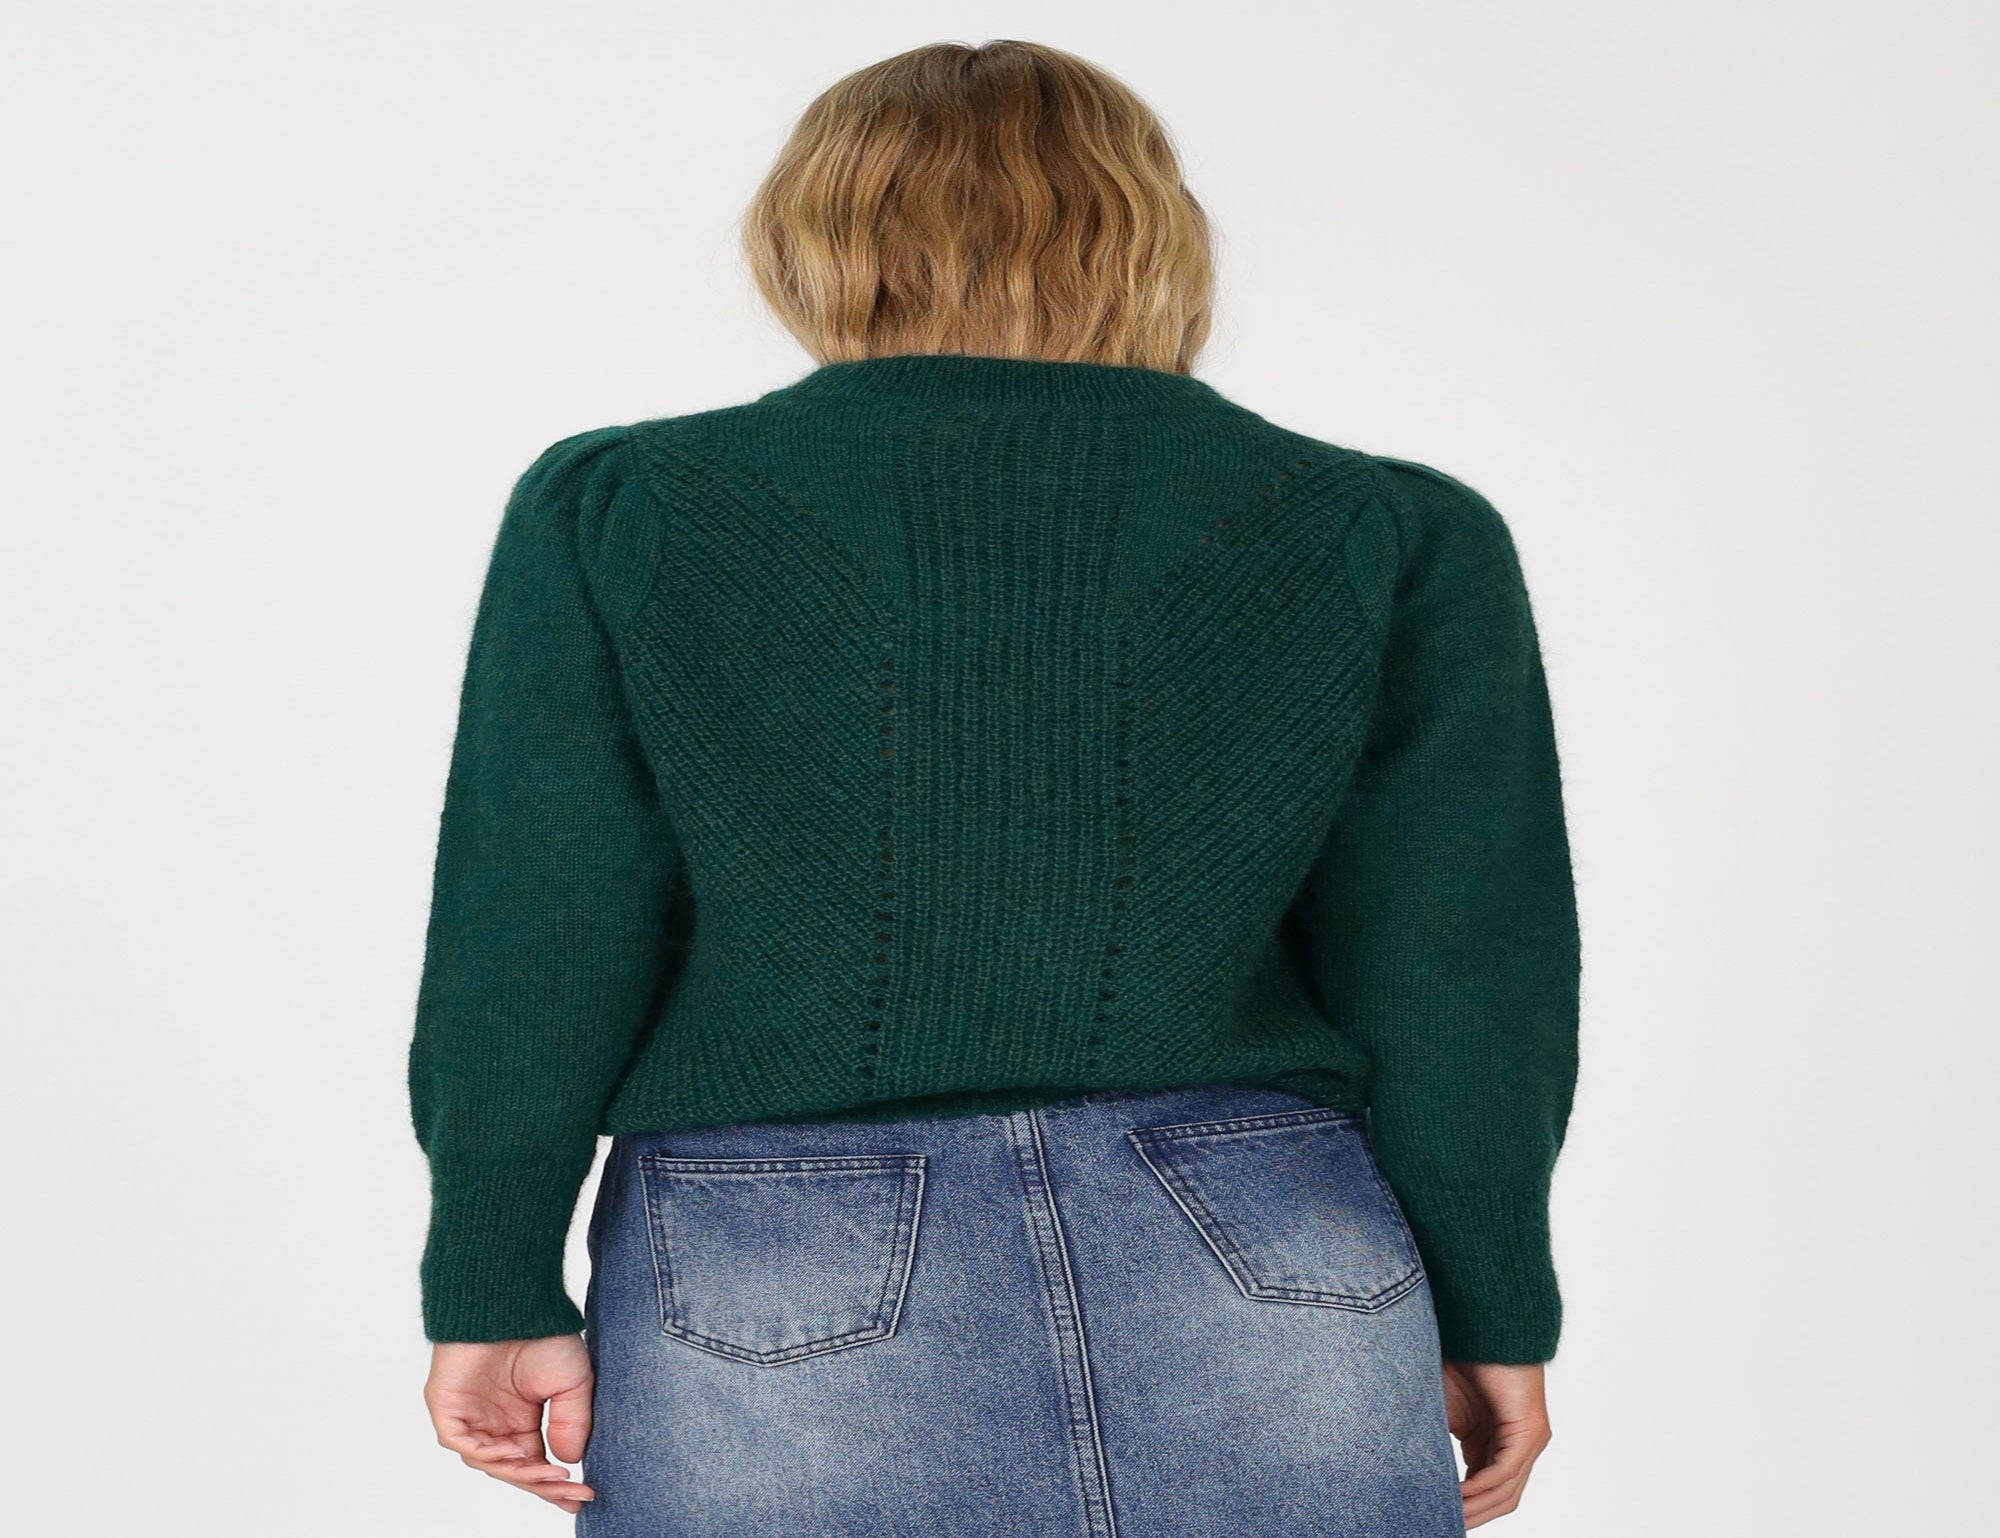 Jewel Sweater - Green - Knitwear - Long Sleeve - Women's Clothing - Storm